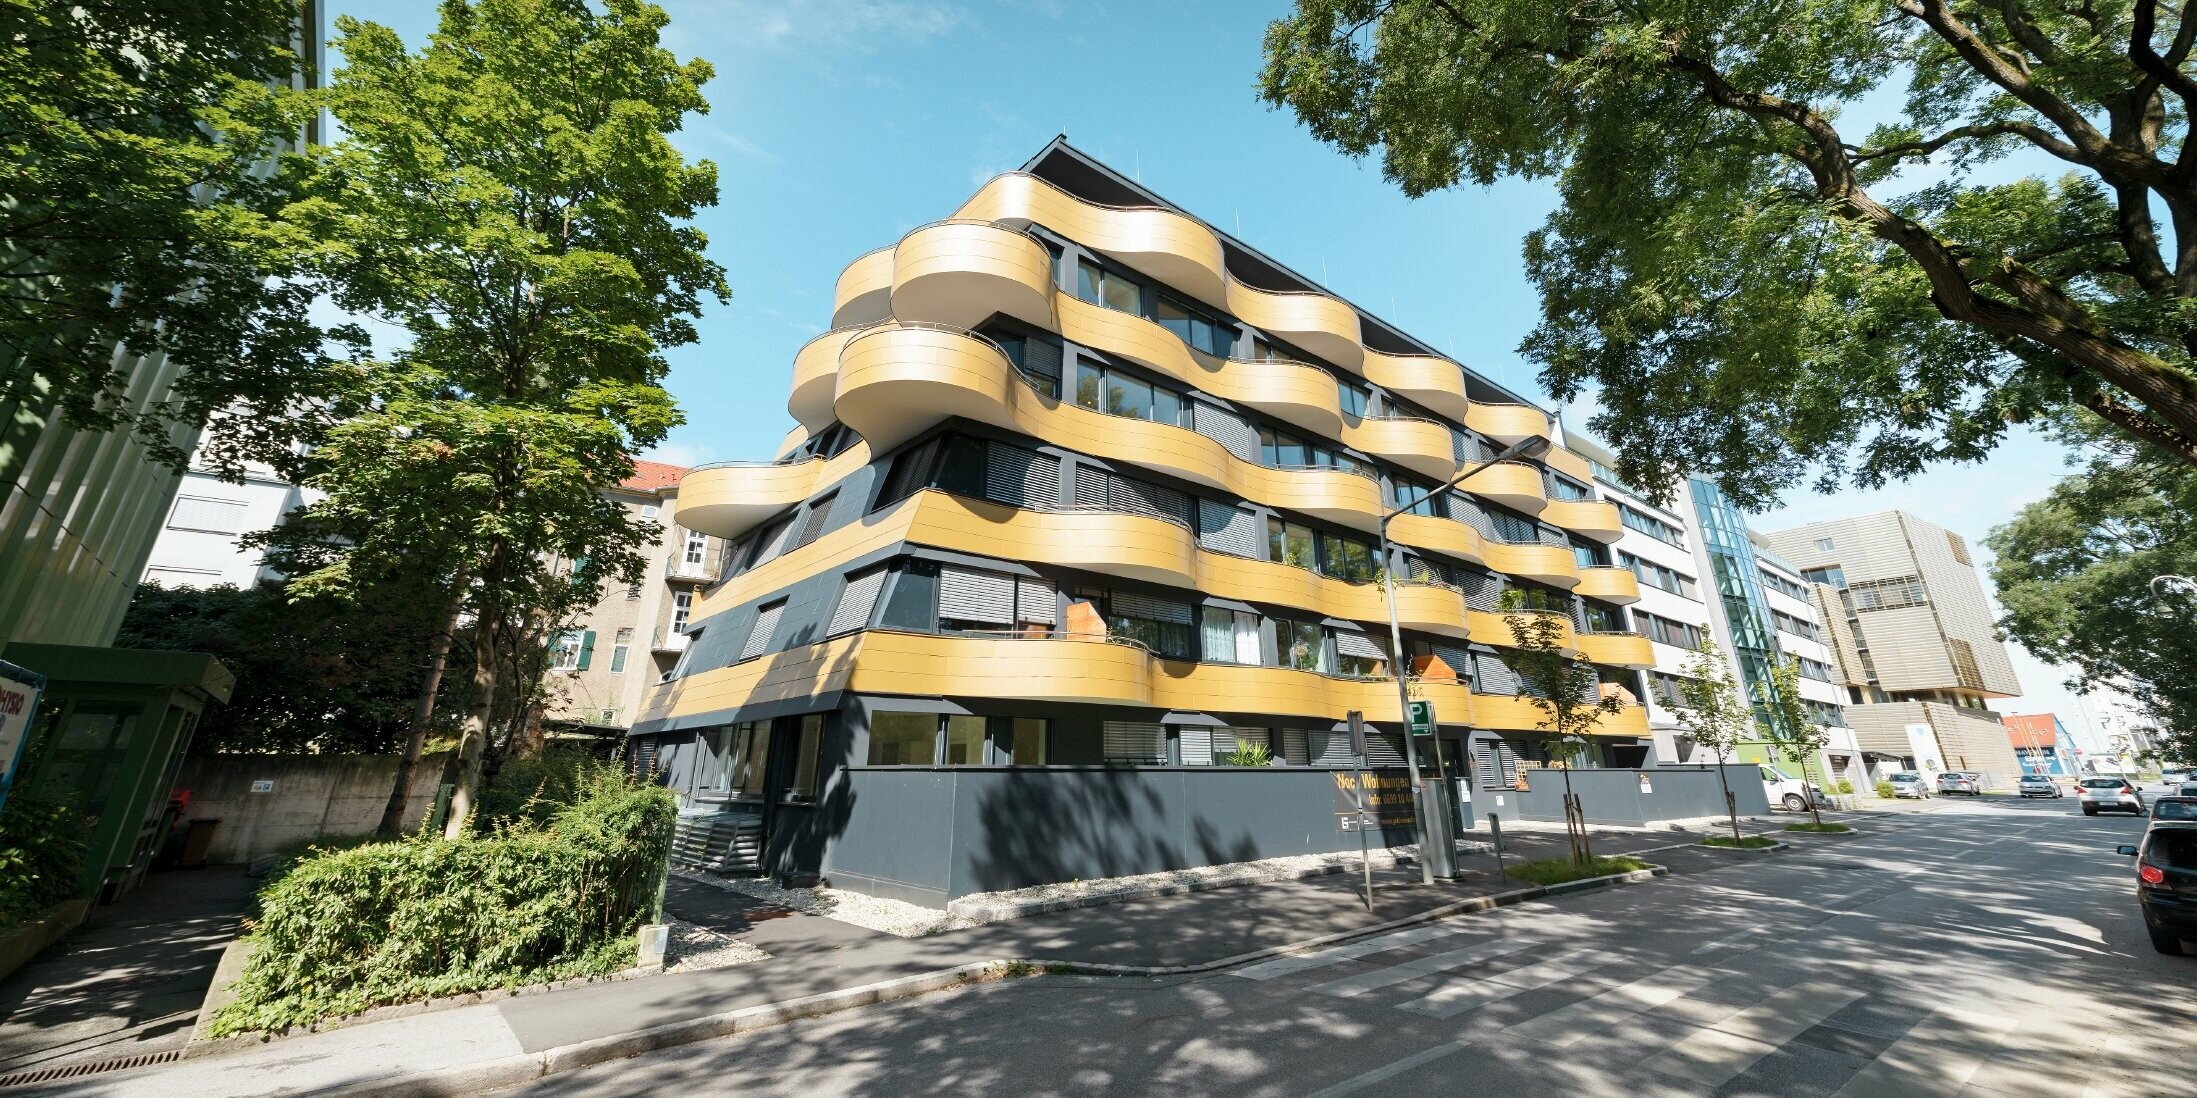 Bostadshuset "Goldene Welle" i Graz, Österrike med aluminiumkompositskiva i guld och rundade, vågiga balkonger 